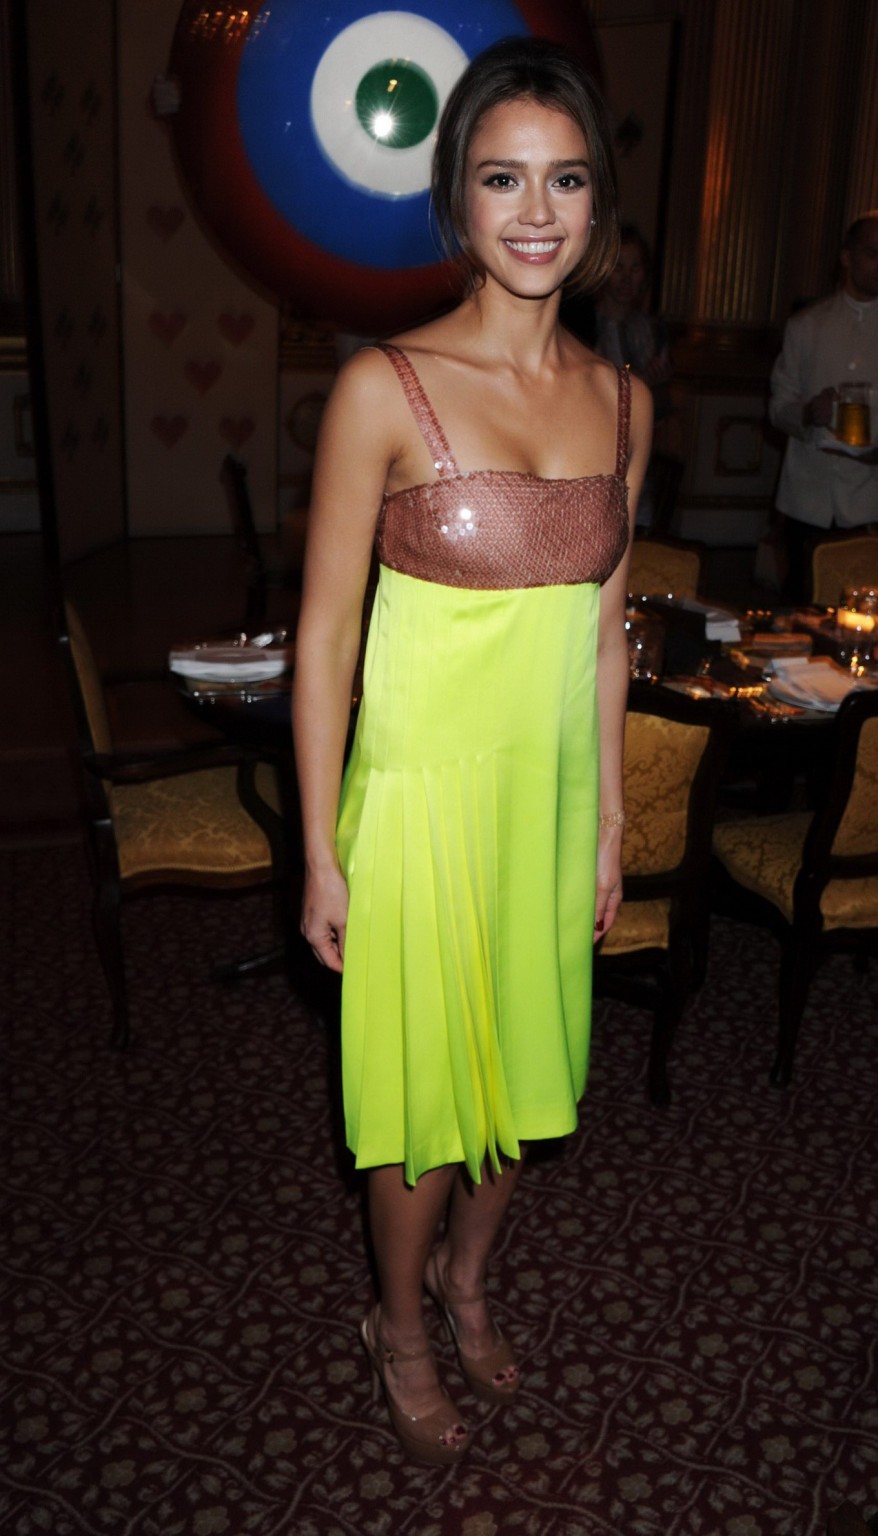 Jessica alba impresionante con un vestido sexy en el evento en londres
 #75324878